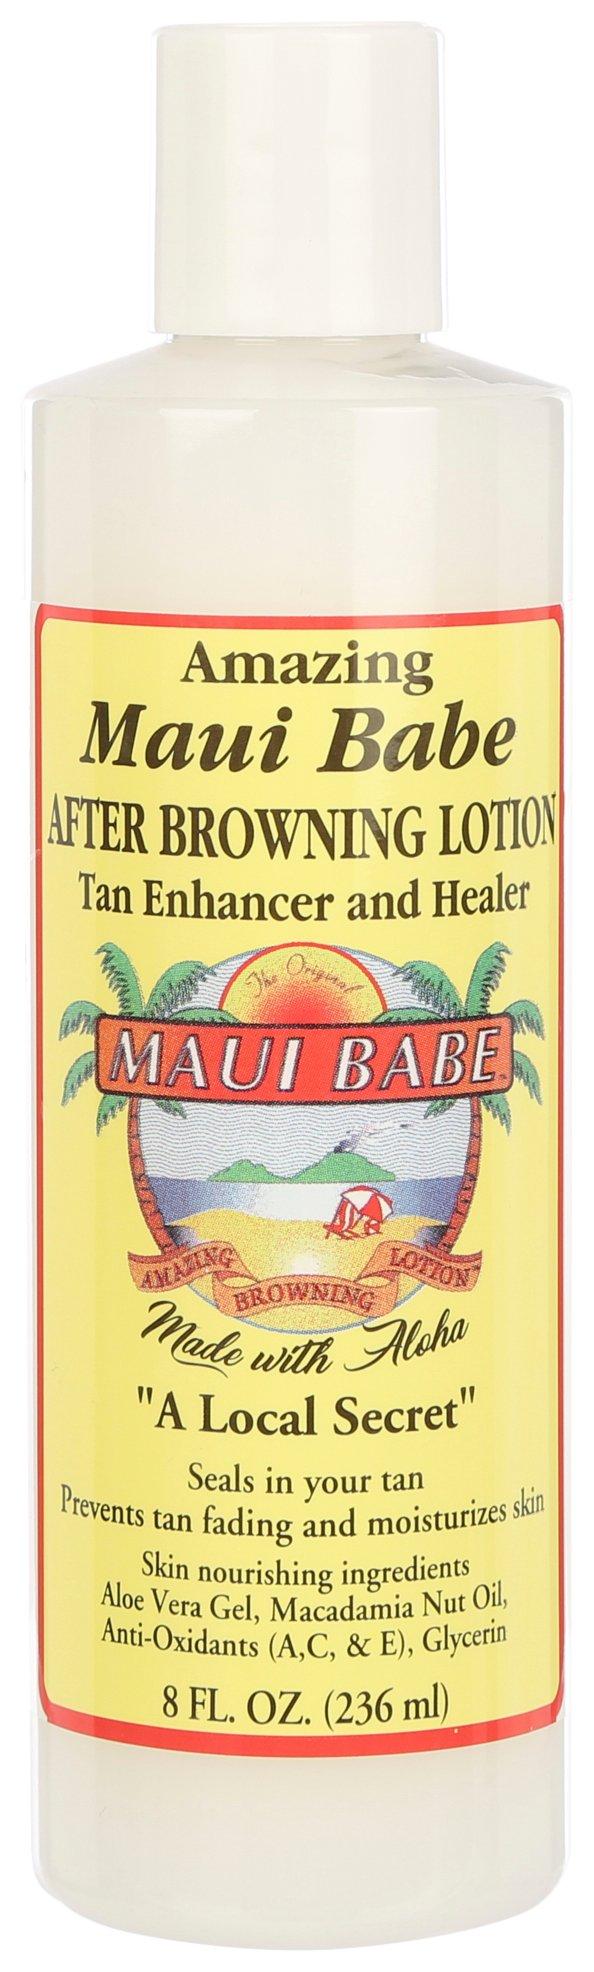 Maui Babe 8 Fl.Oz. Tan Enhancer & Healer Lotion